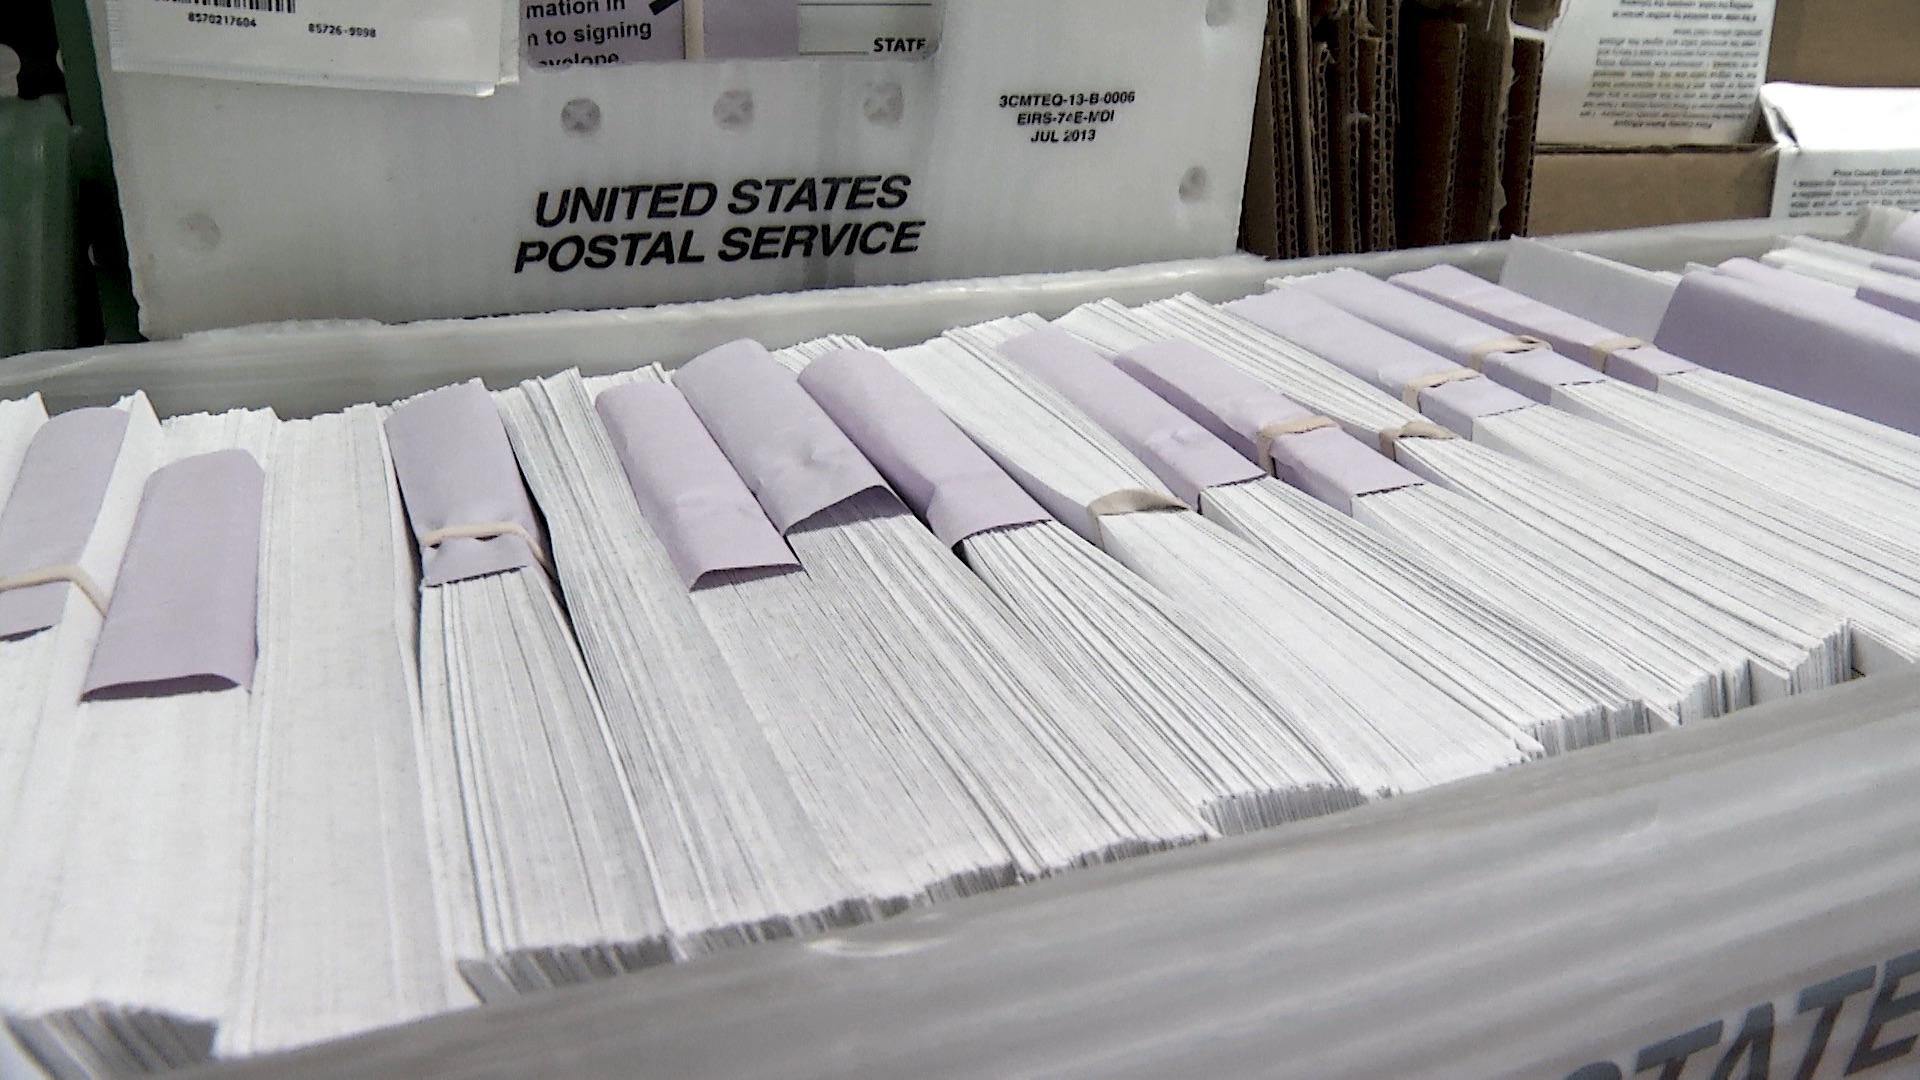 360 mail ballots